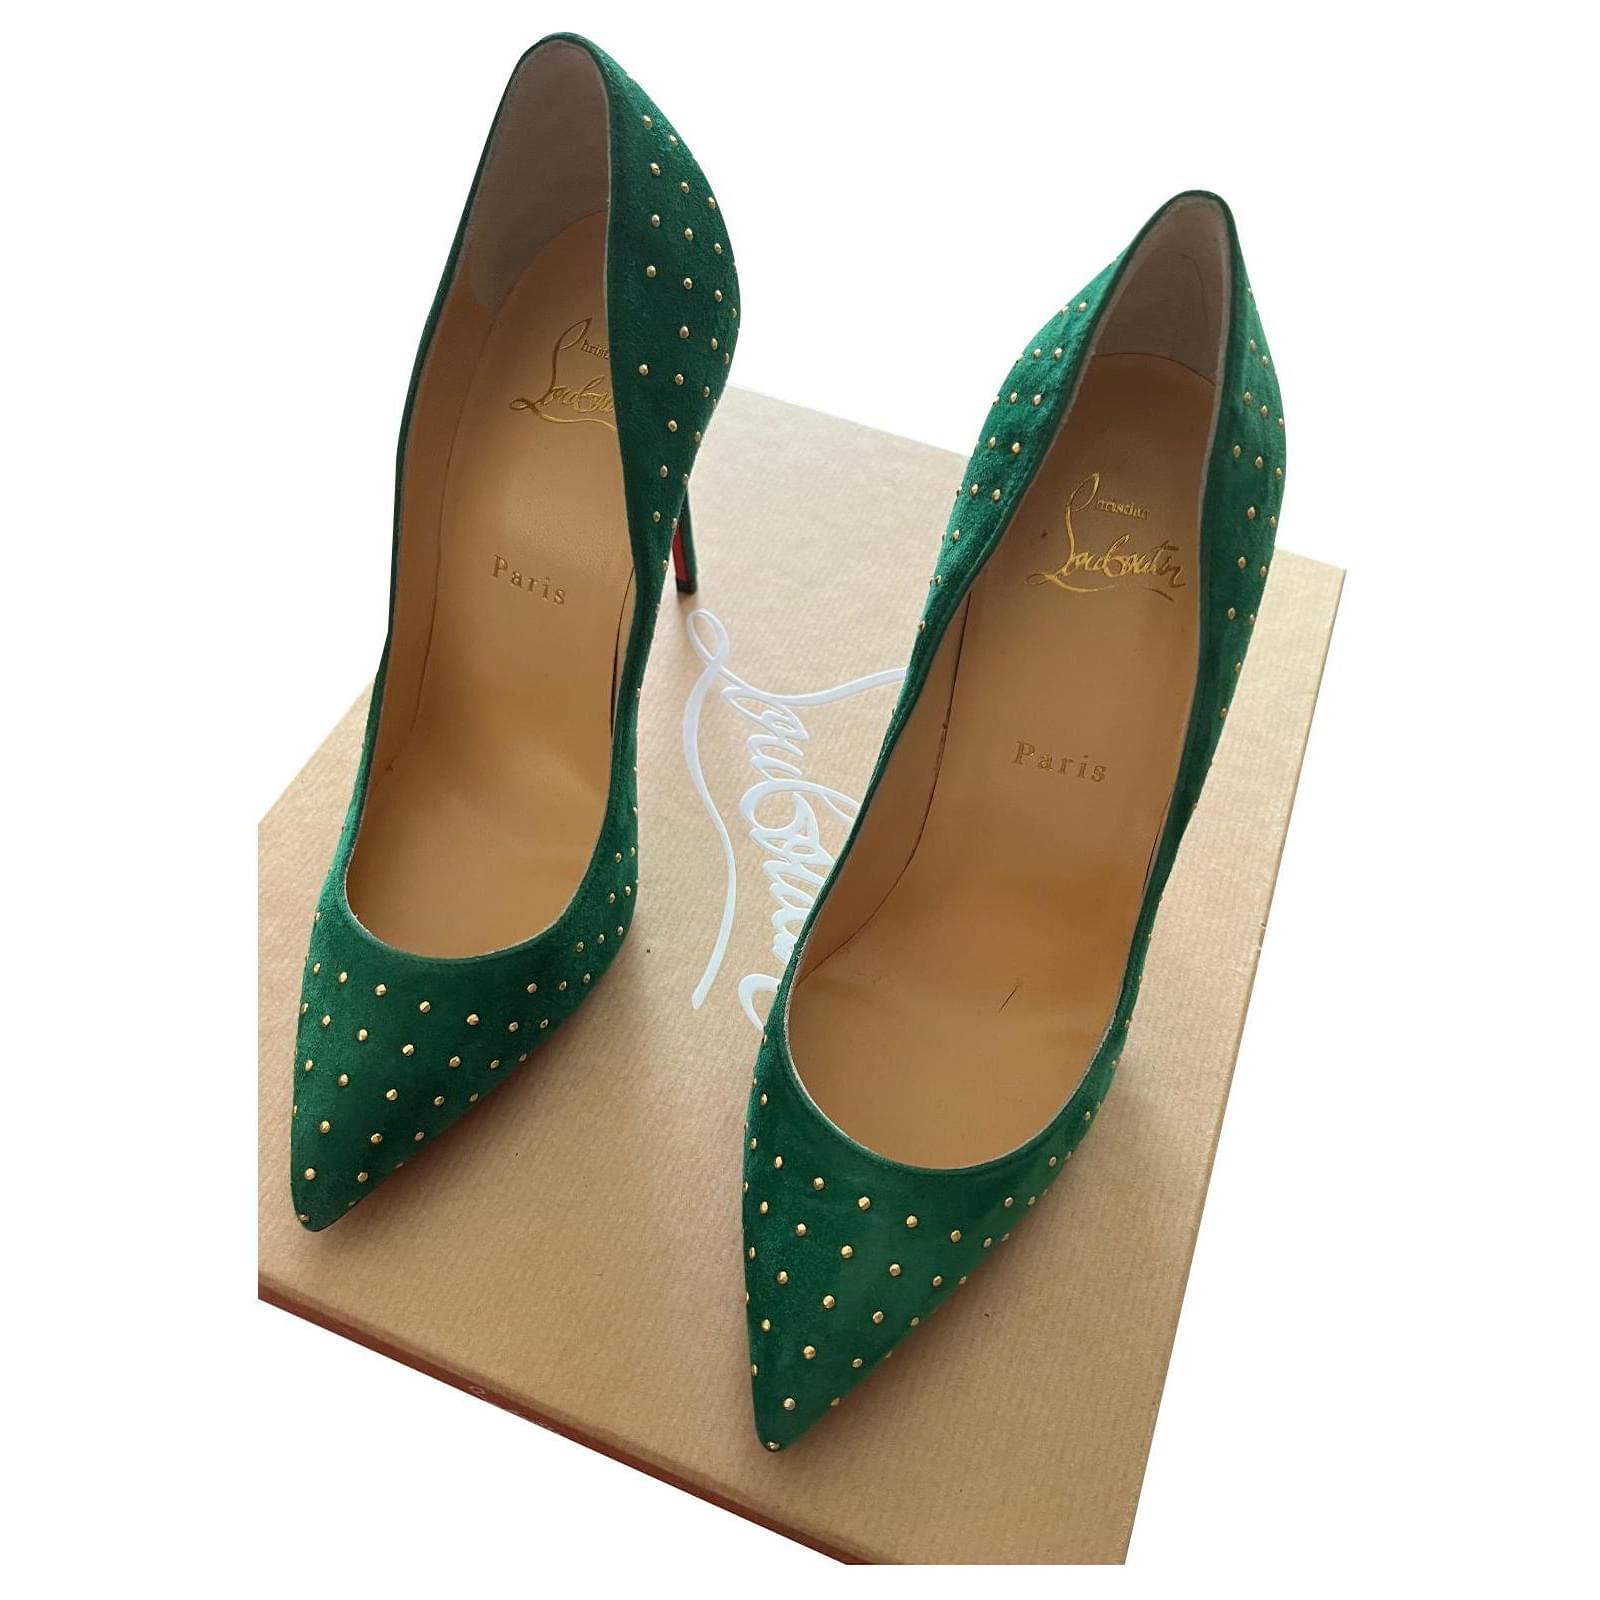 Woman Handmade Medium Block Heels in Green Suede, New collection Emerald  green